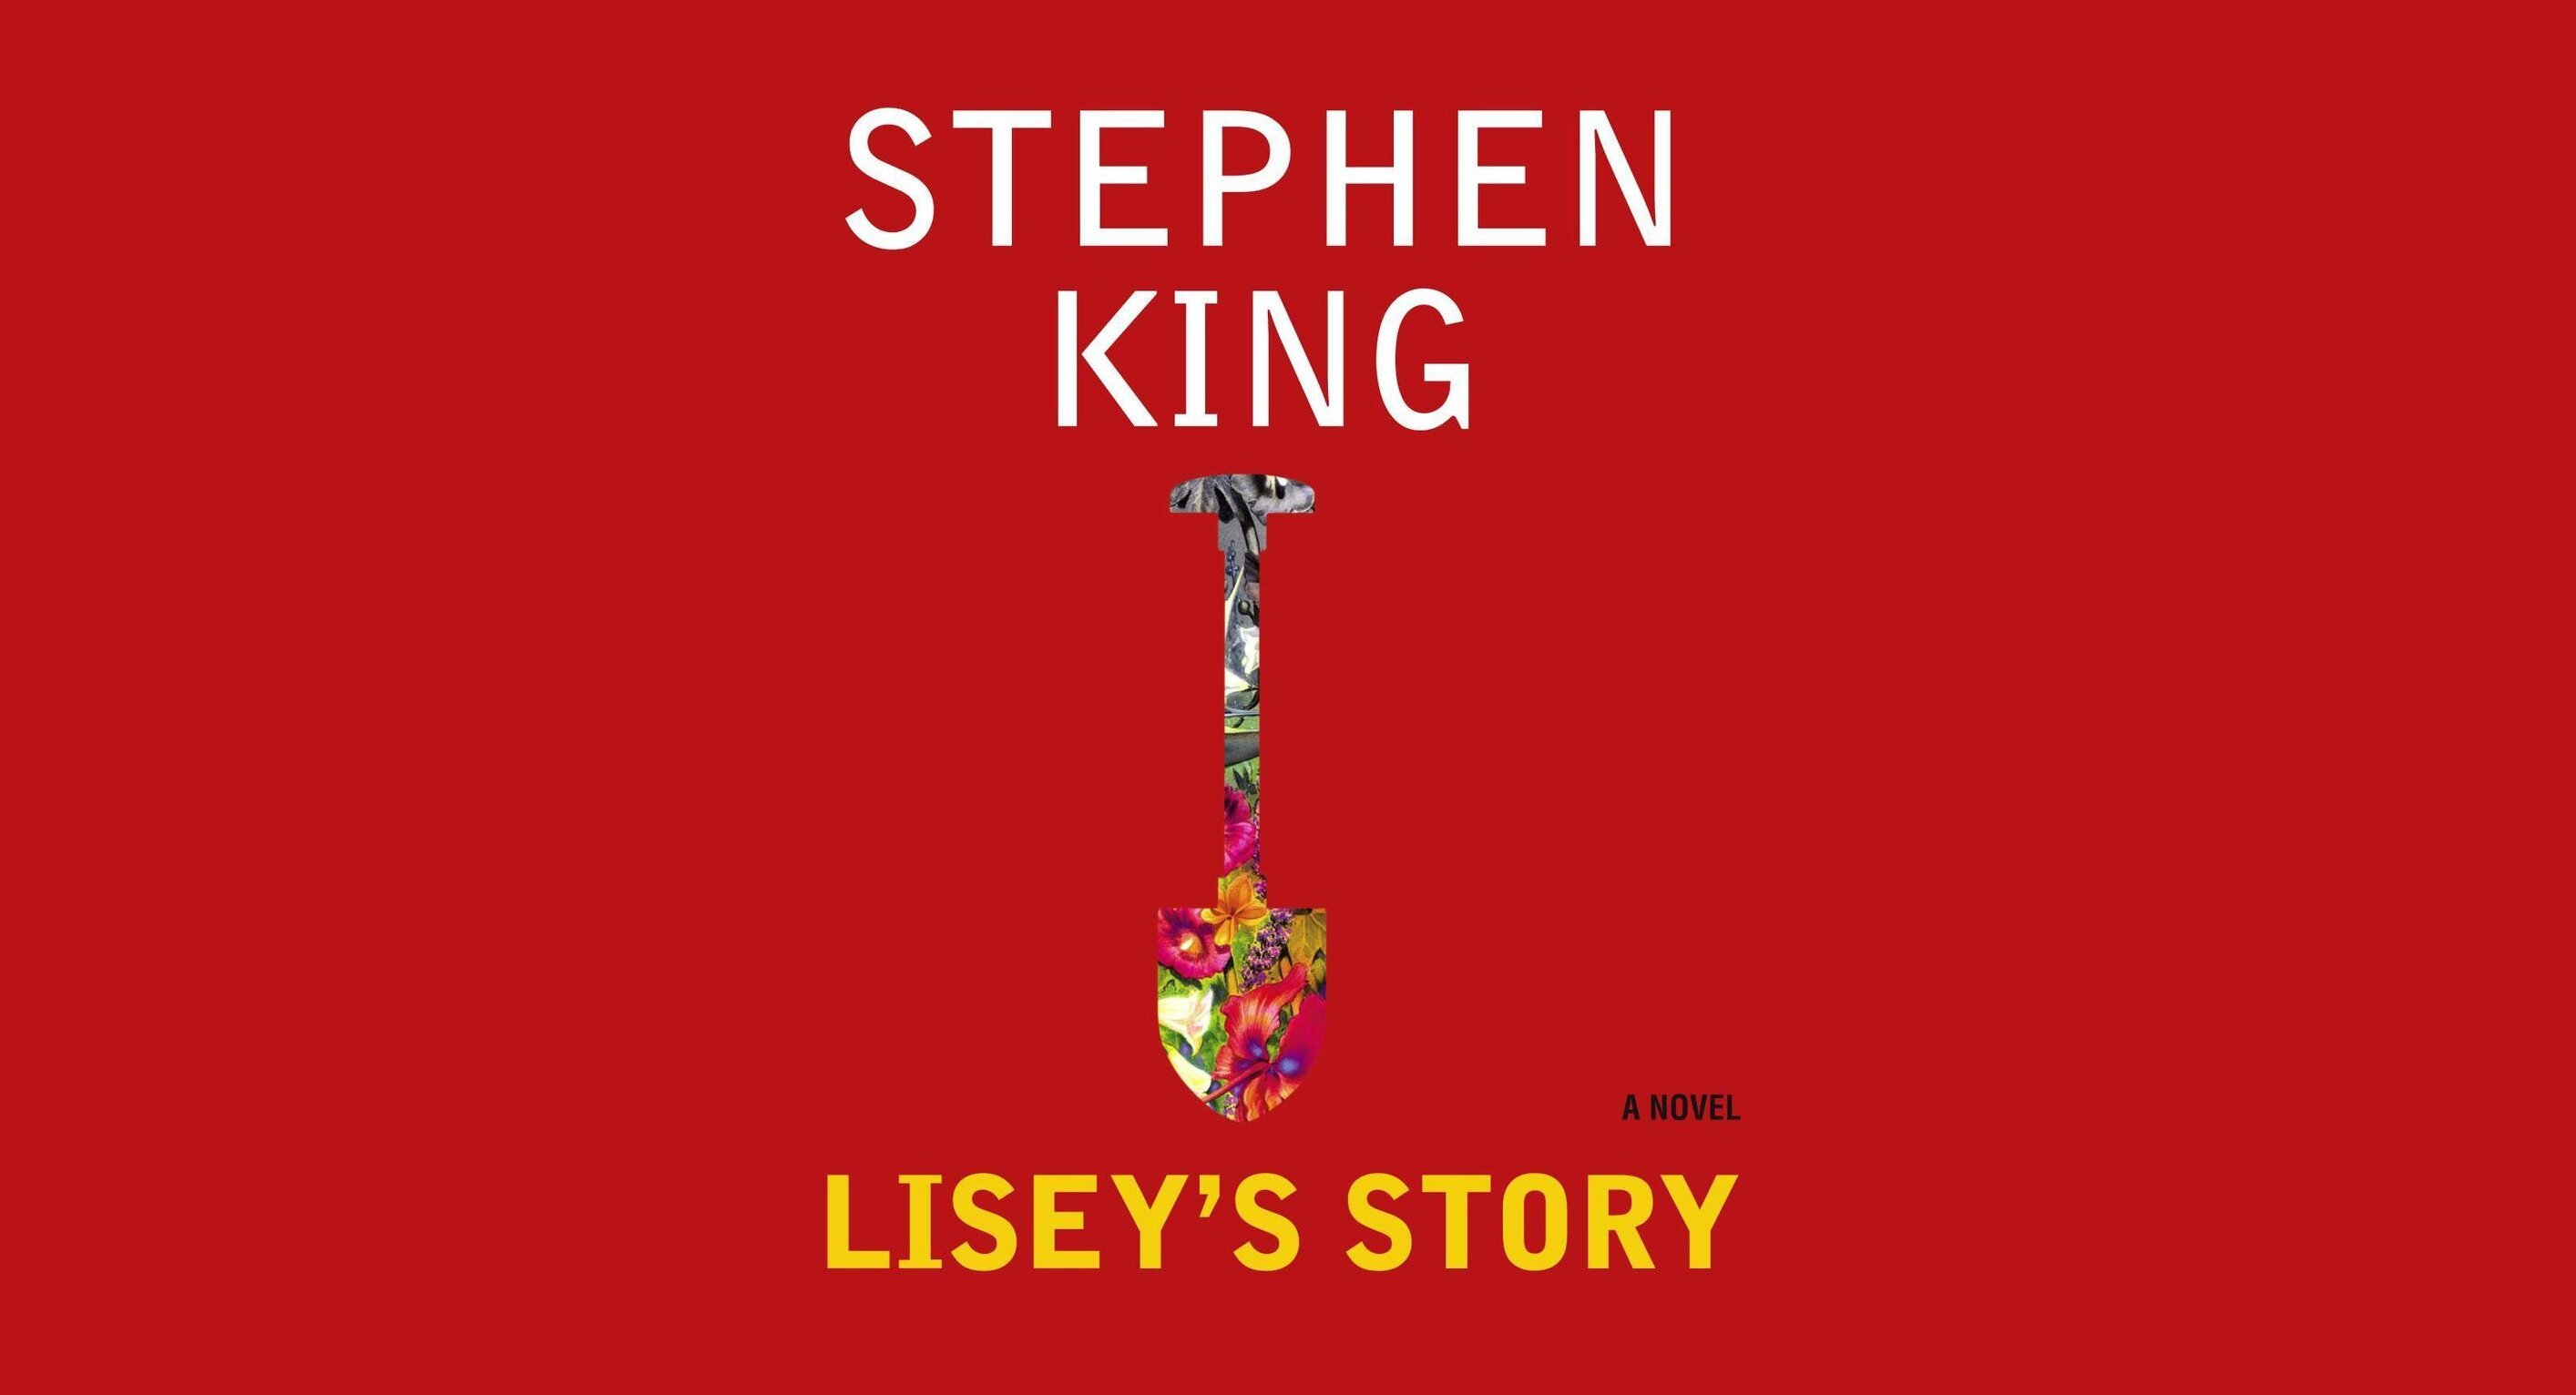 Ο J.J. Abrams και η Bad Robot φέρνουν την σειρά «Lisey’s Story» του Stephen King στην υπηρεσία Apple TV+